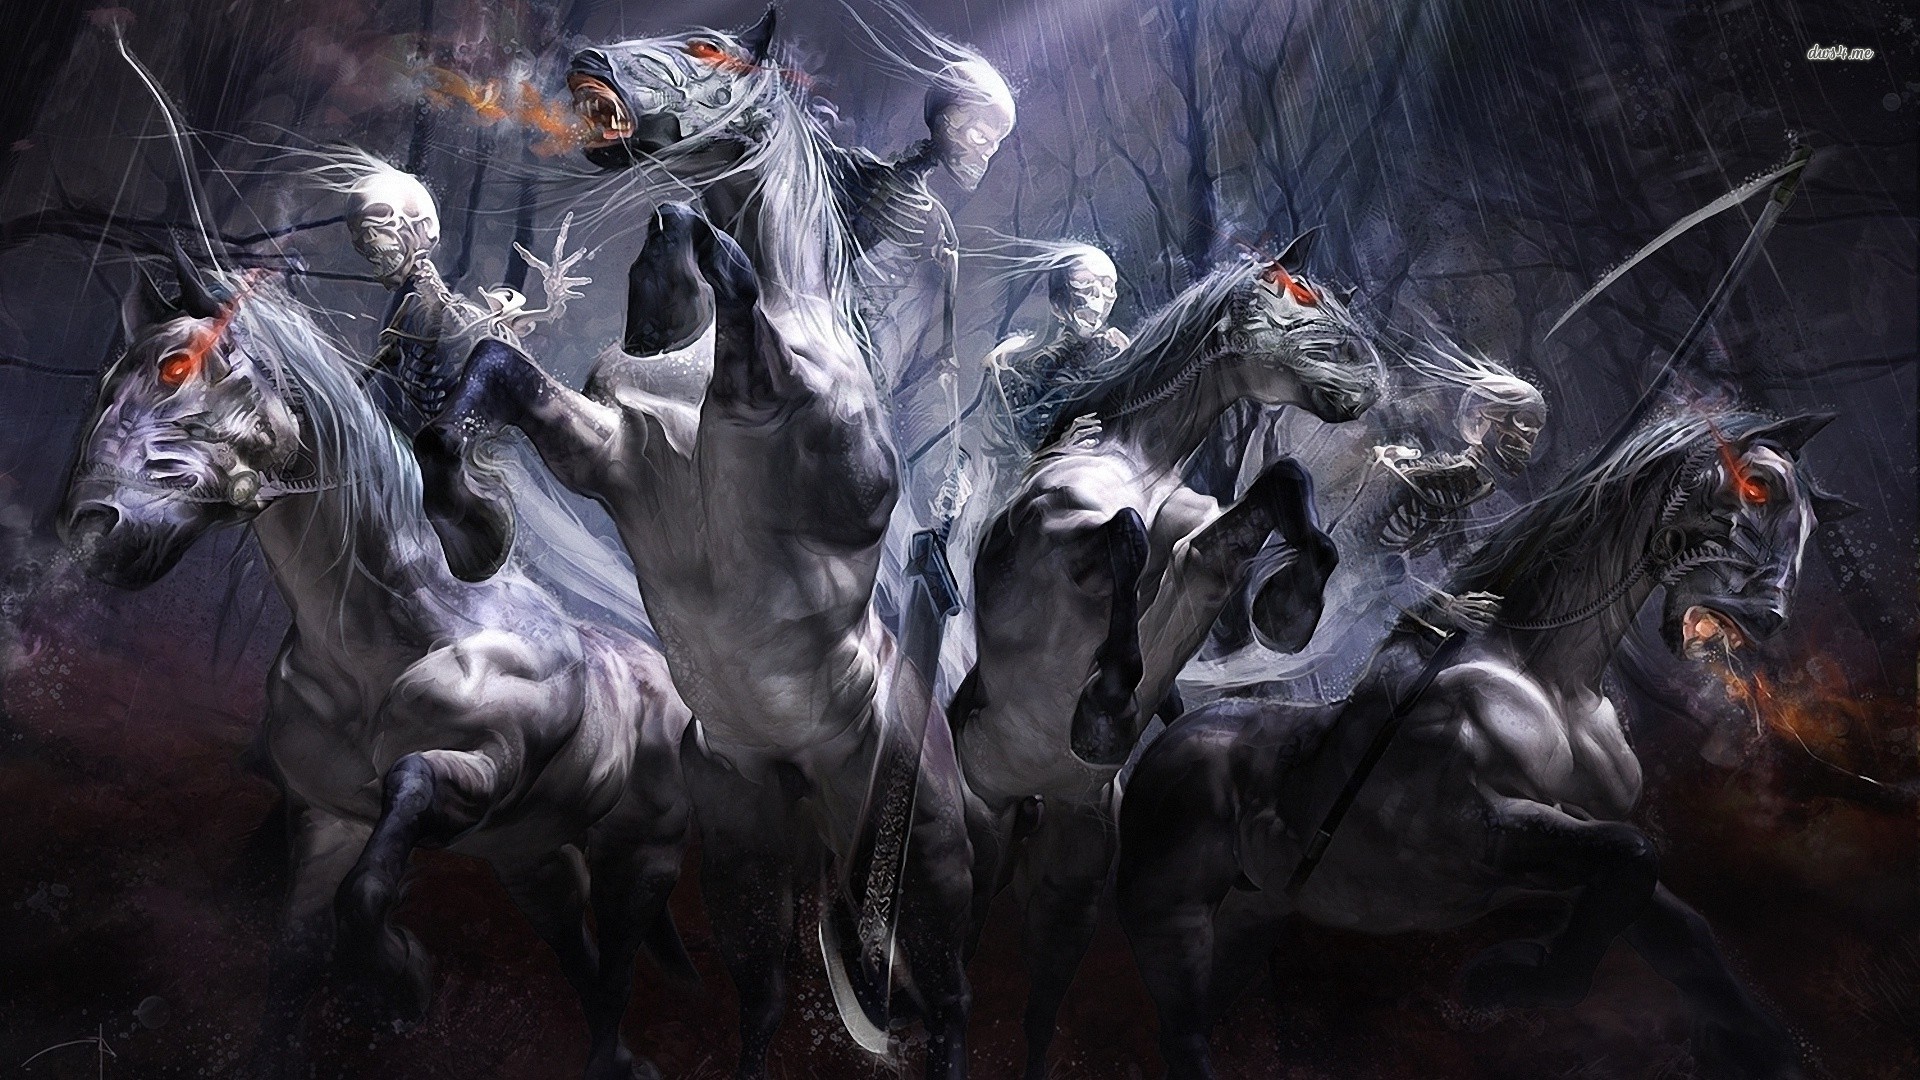 [46+] Darksiders Four Horsemen Wallpaper on WallpaperSafari